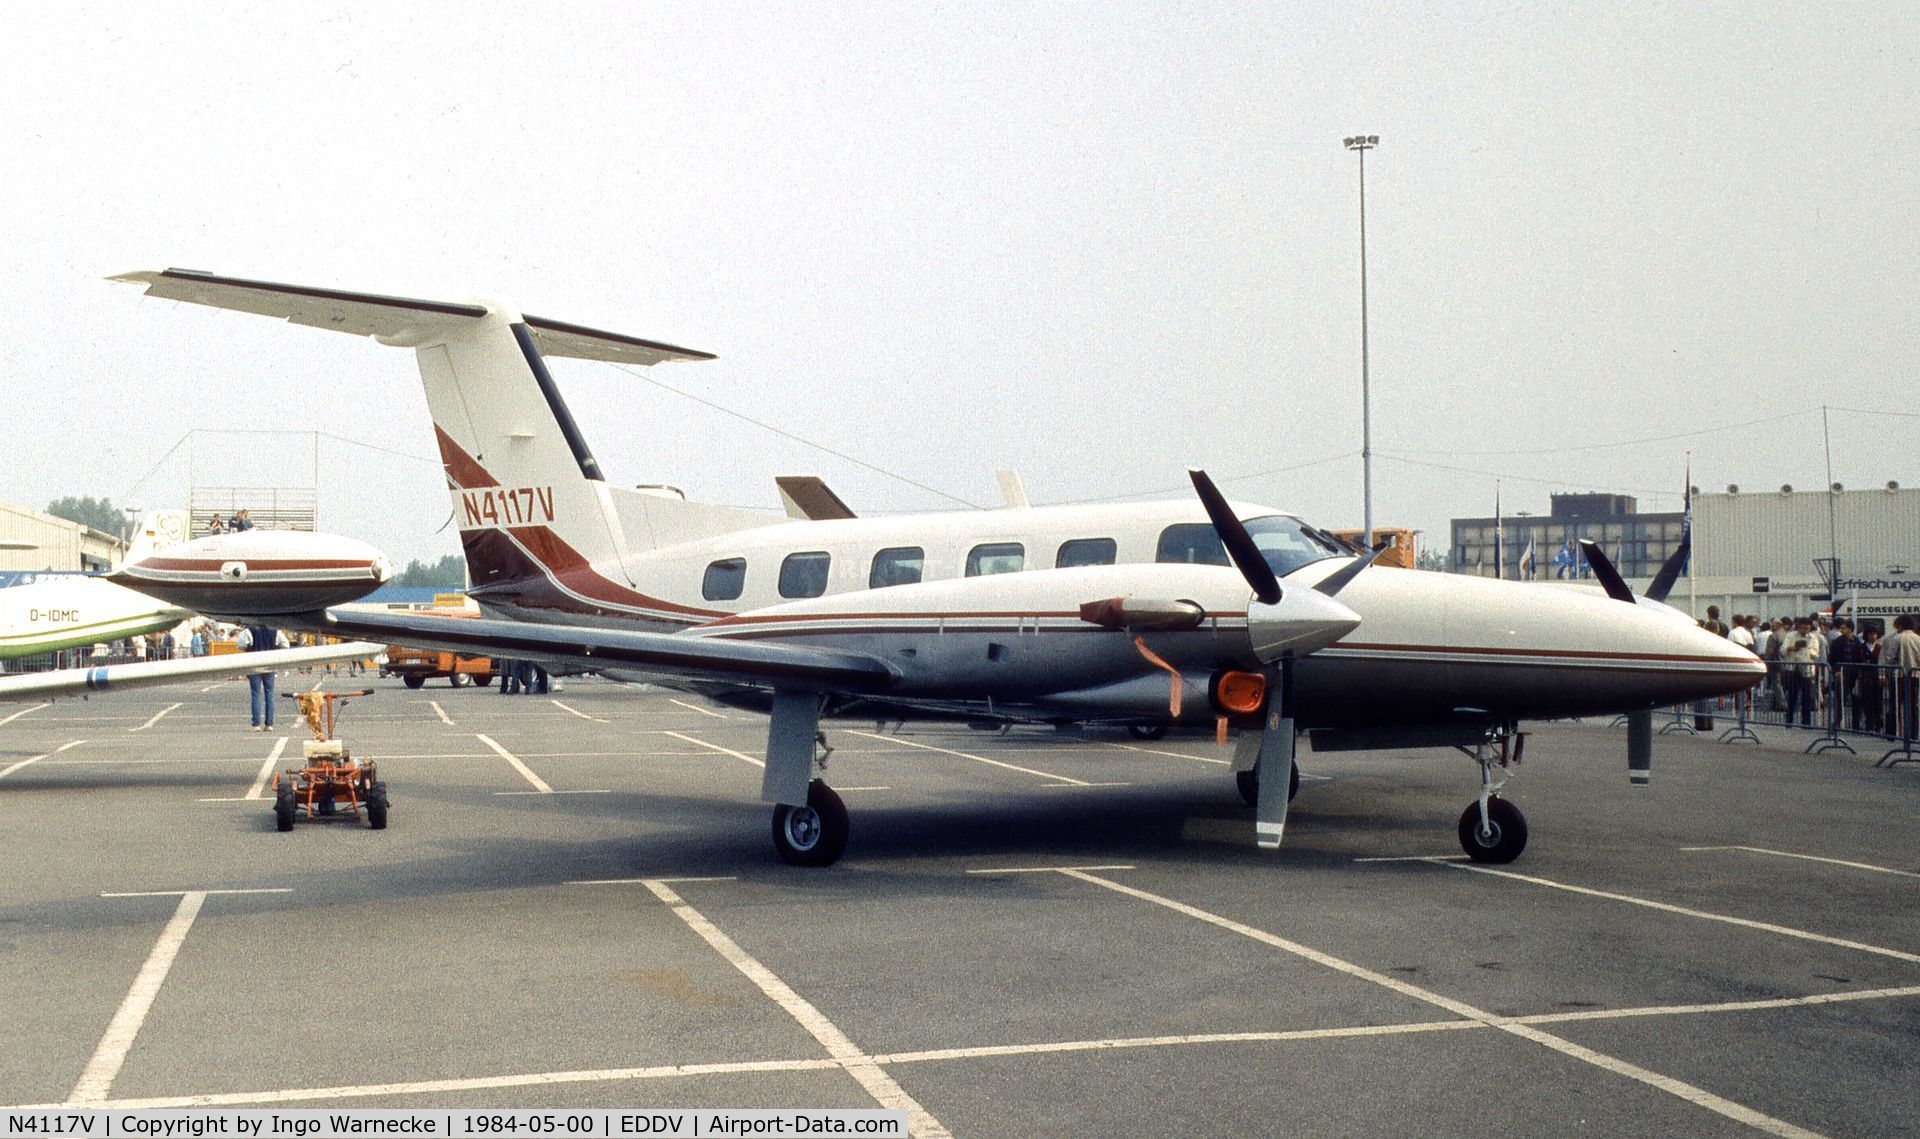 N4117V, 1984 Piper PA-42-720 Cheyenne IIIA C/N 42-5501018, Piper PA-41-720 Cheyenne IIIA at the ILA 1984, Hannover